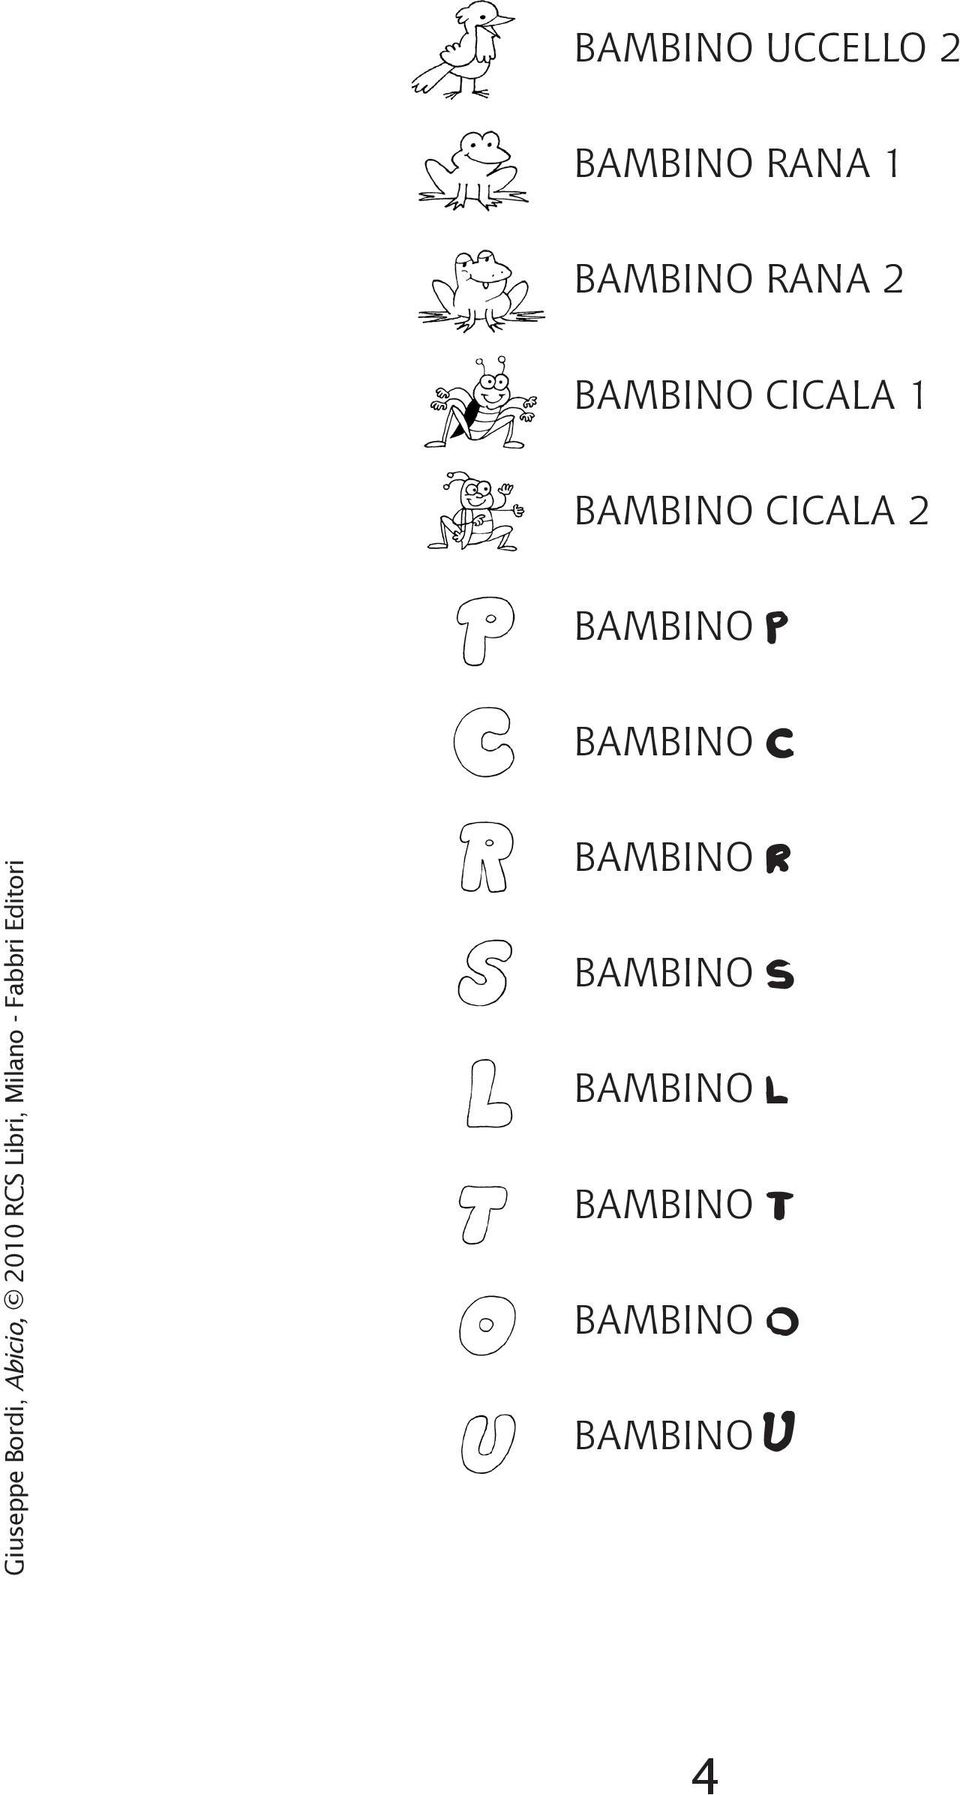 BAMBINO P BAMBINO C BAMBINO R BAMBINO S